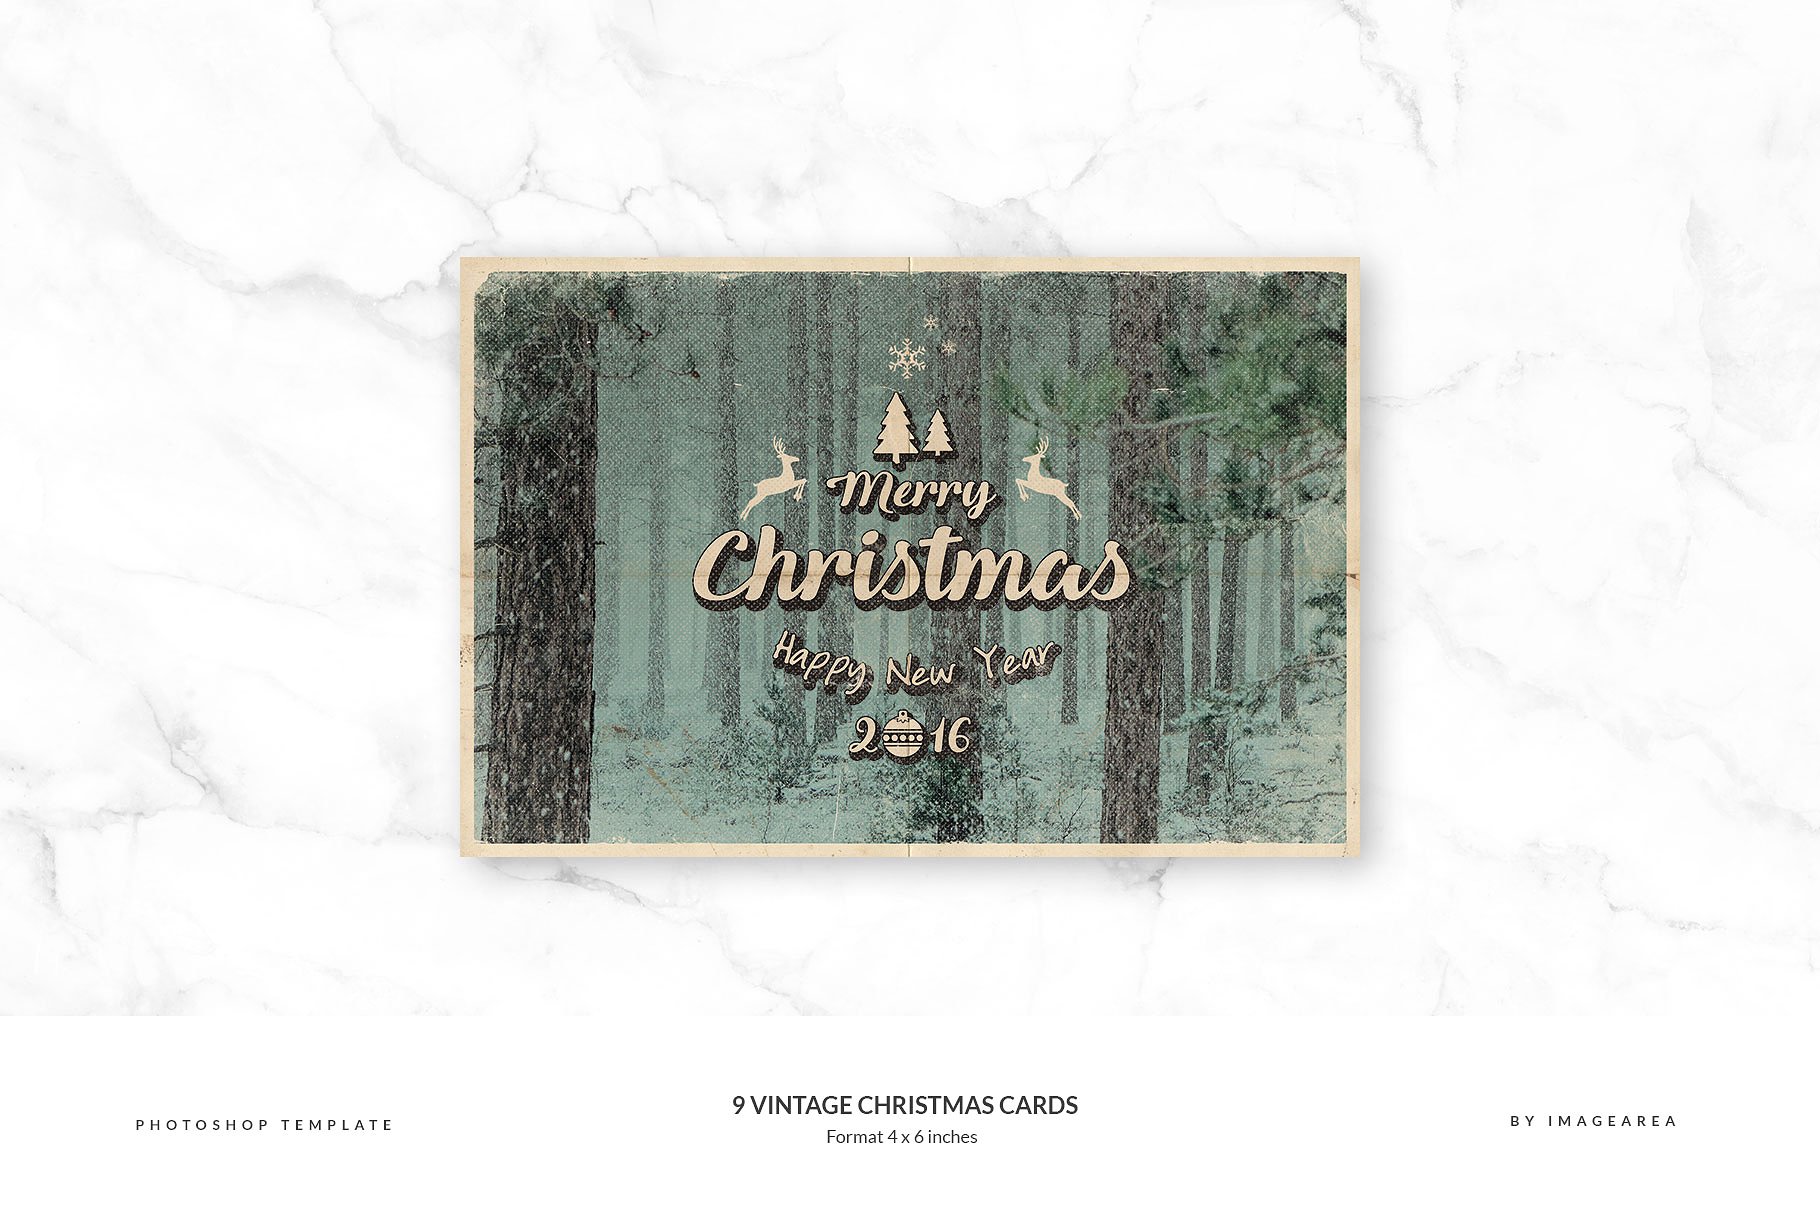 9款复古怀旧风格圣诞贺卡模板 9 Vintage Christmas Cards插图(4)